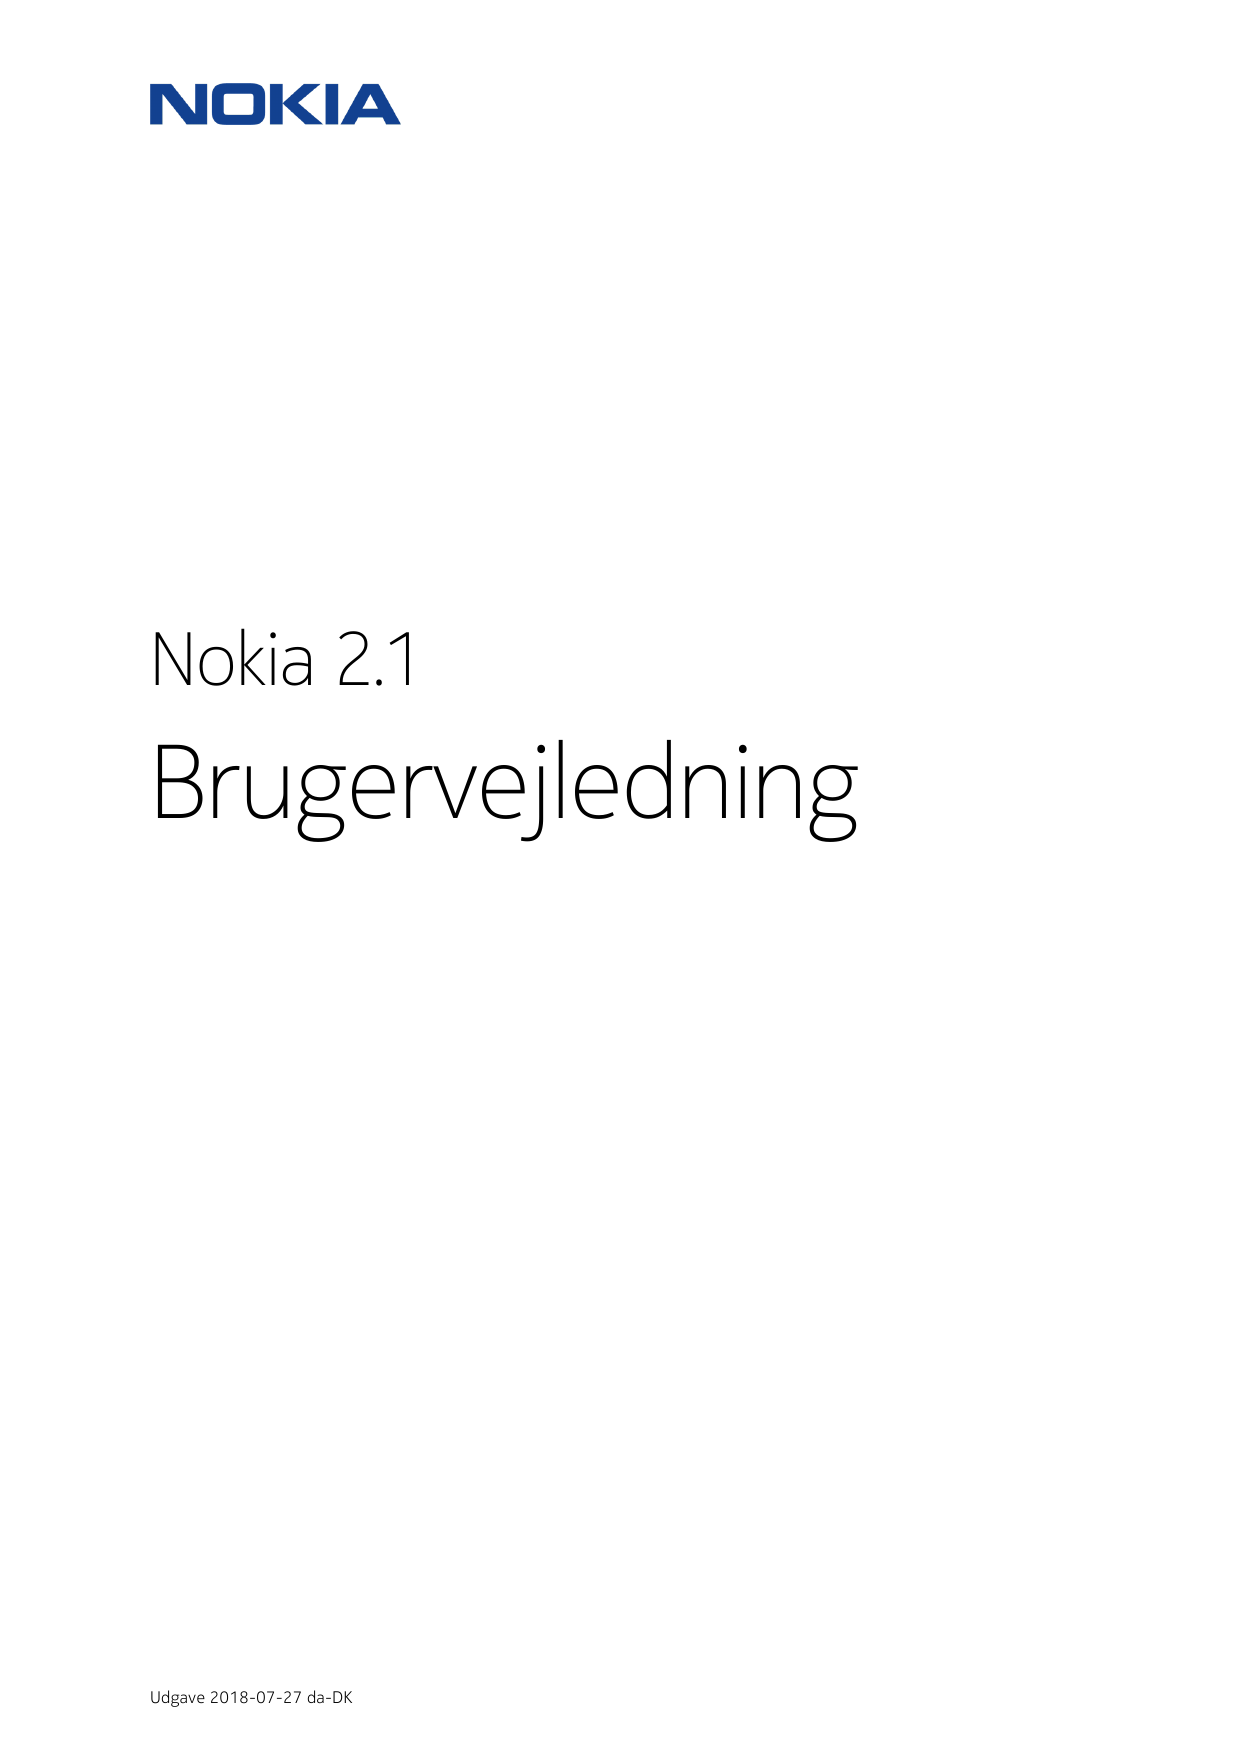 Nokia 2.1BrugervejledningUdgave 2018-07-27 da-DK